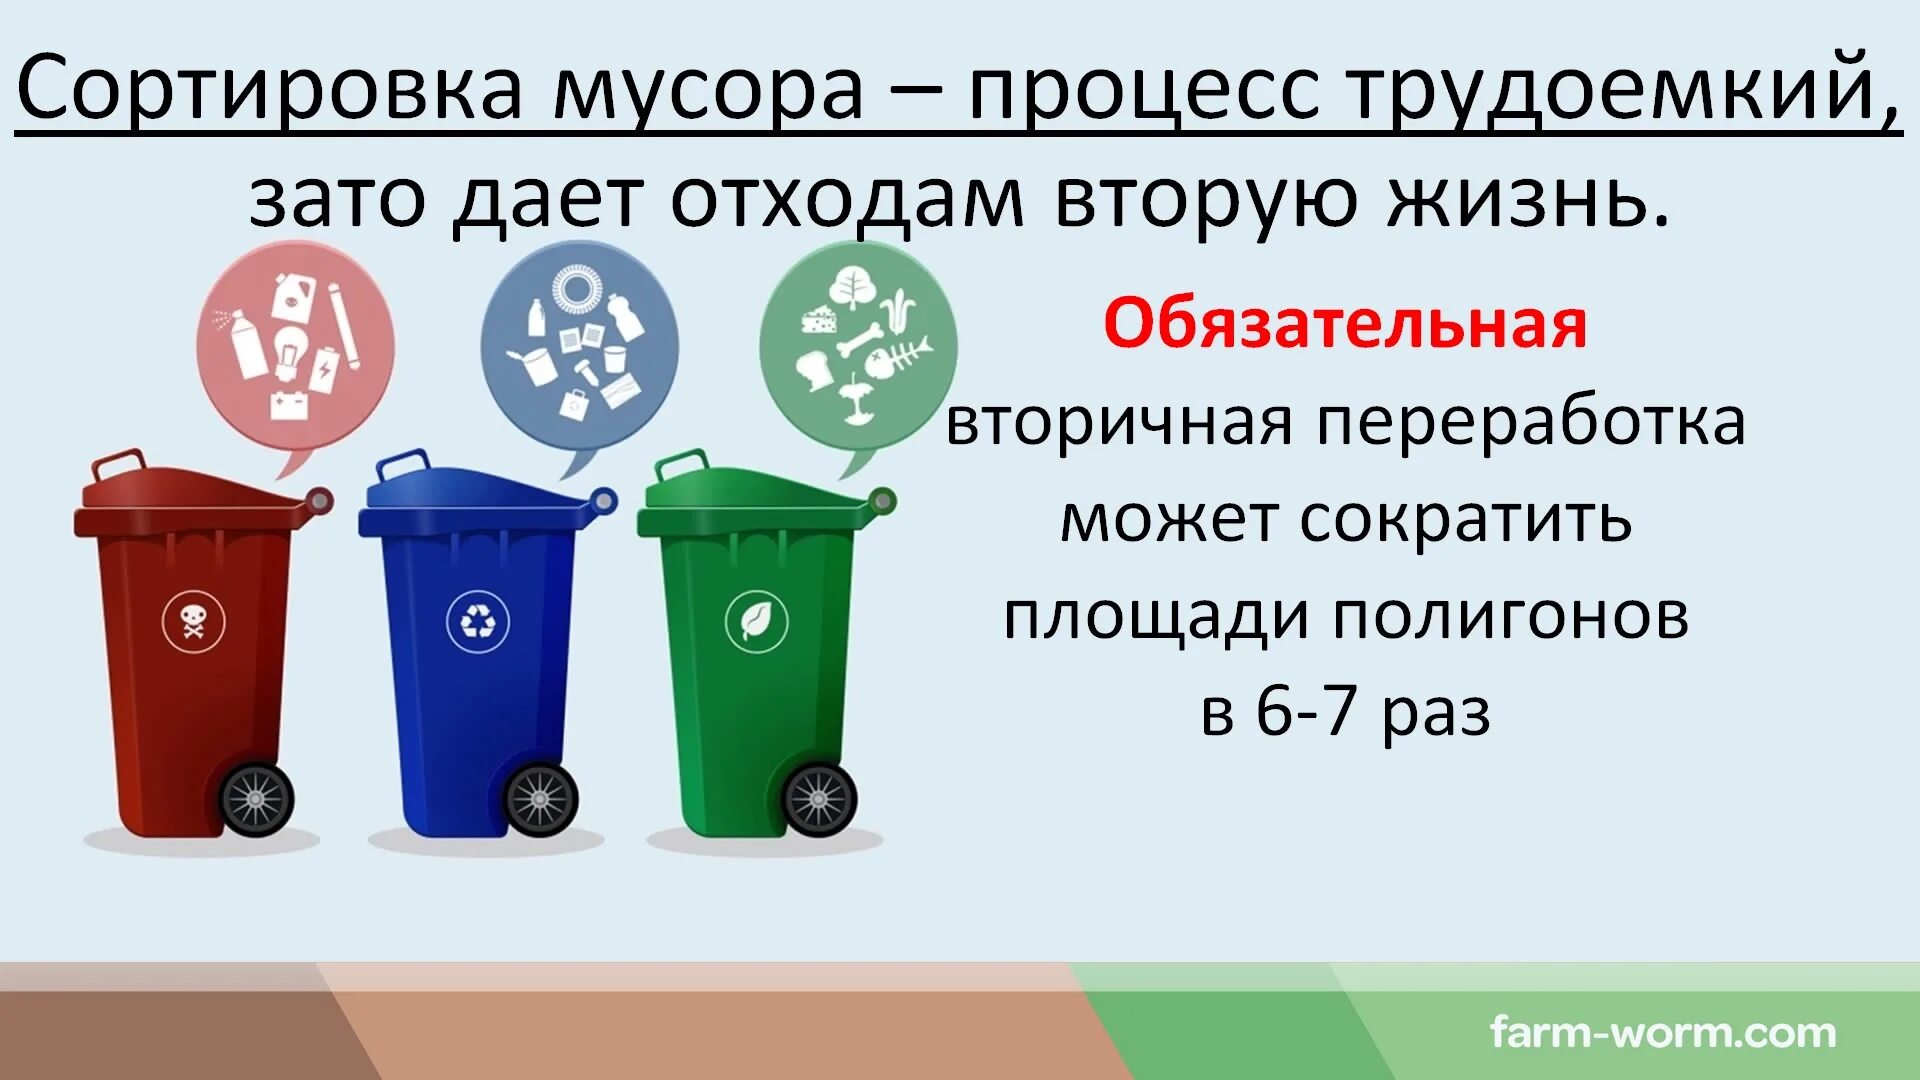 Отходы группы г. Классификация утилизации отходов. Типы бытовых отходов. Типы мусорных отходов.